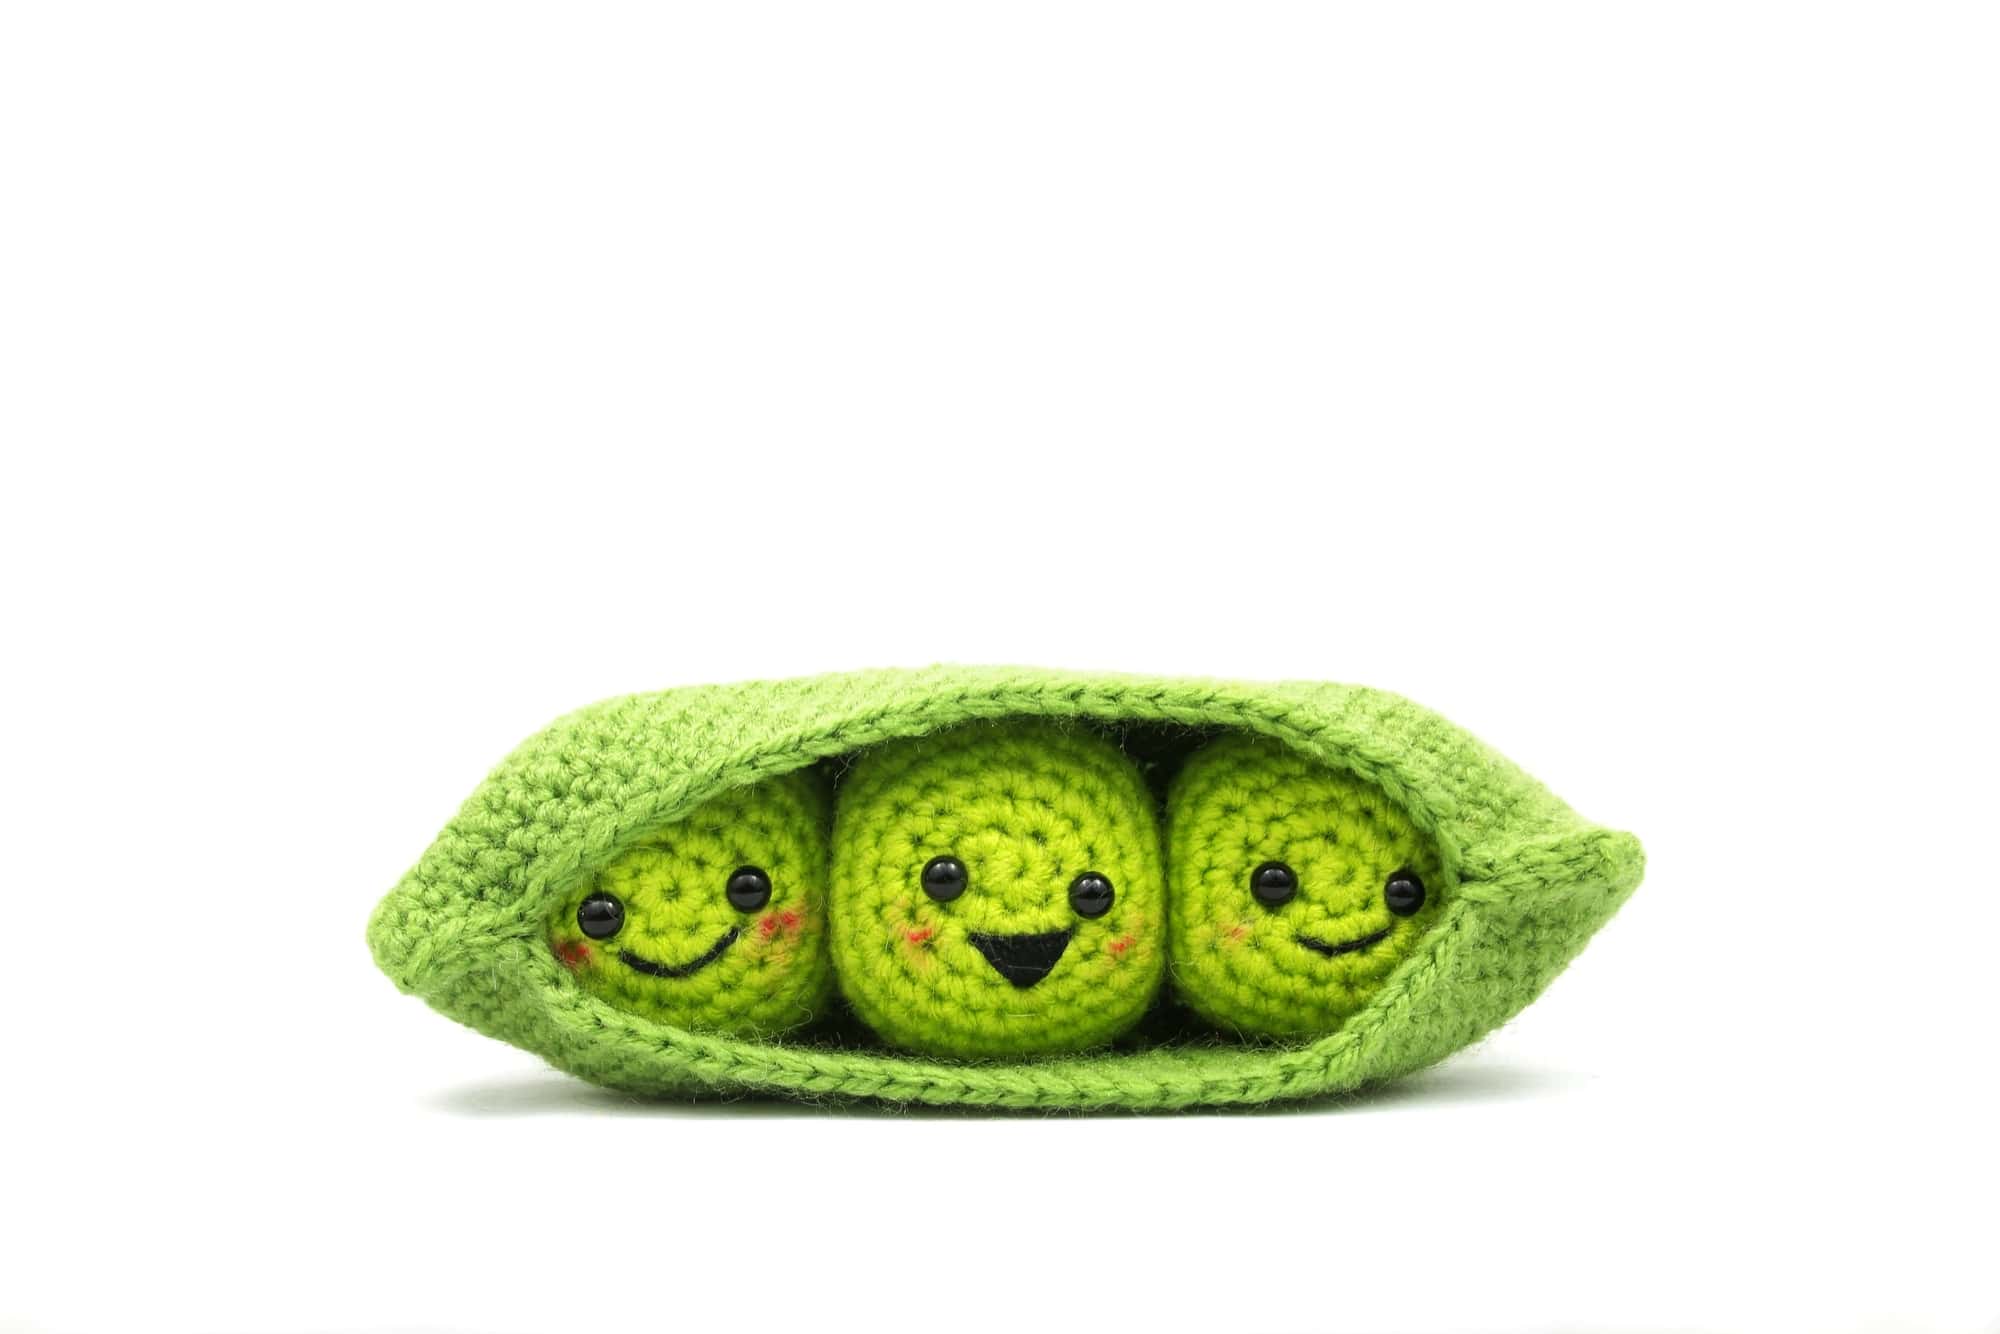 Peas in a Pod Crochet